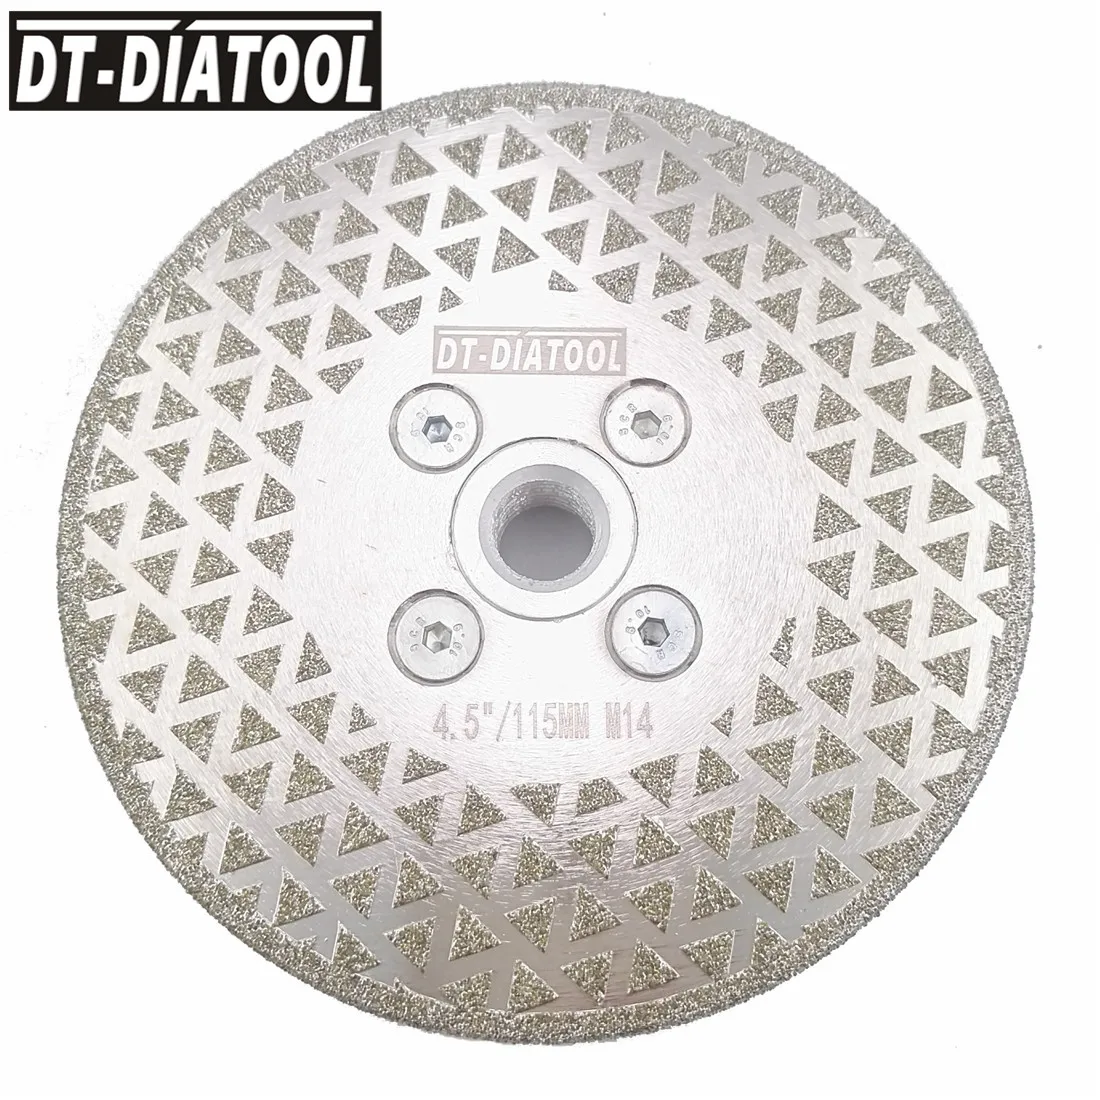 Алмазный режущий диск DT-DIATOOL M14, 1 шт. от AliExpress WW